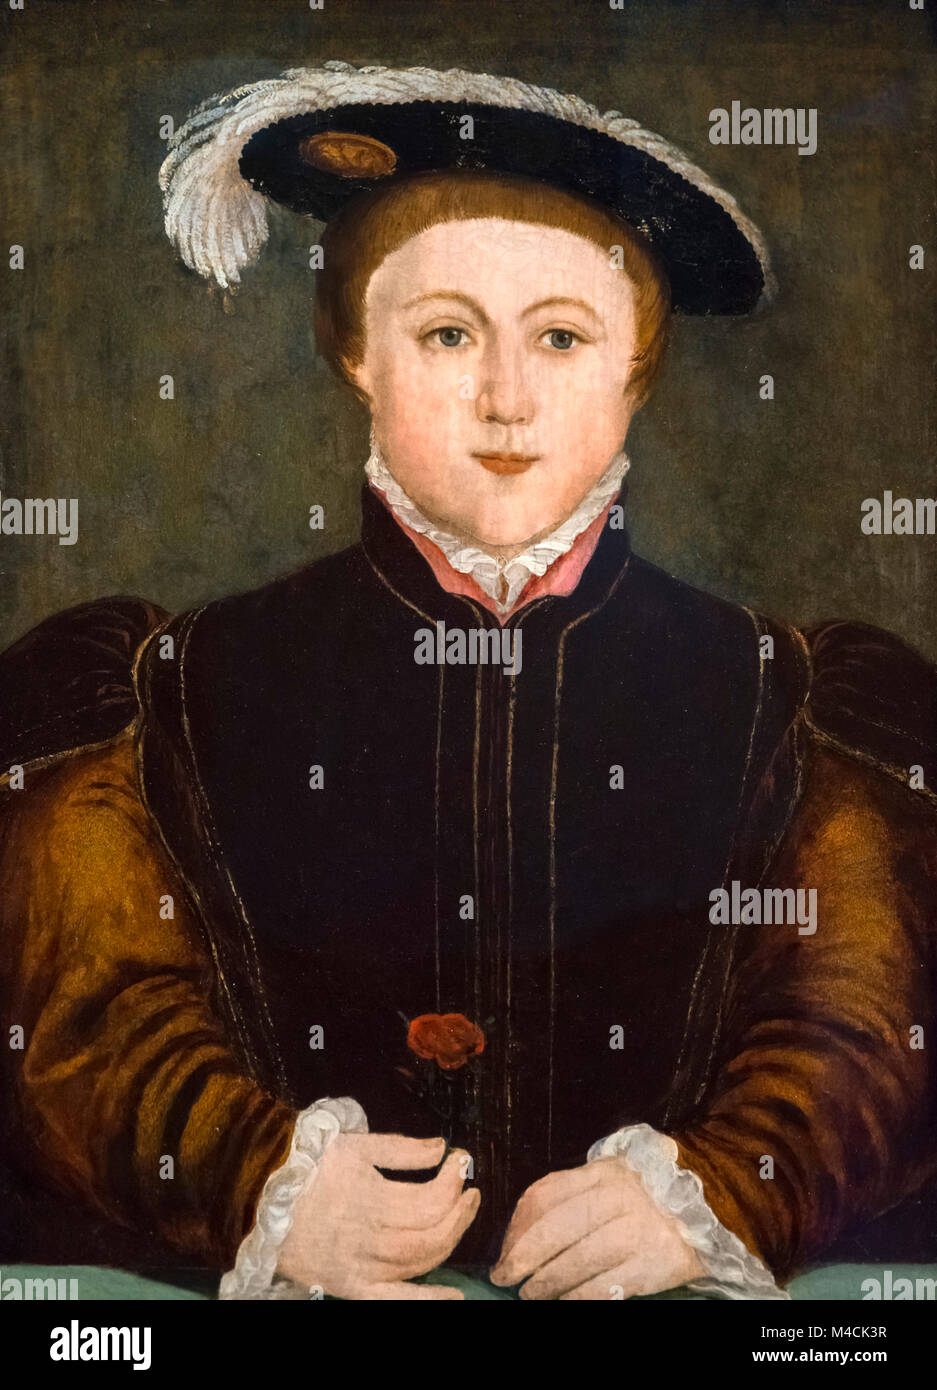 Édouard VI. Portrait du roi Édouard VI d'Angleterre (1537-1553), huile sur panneau, après Hans Holbein, 16ème siècle. Banque D'Images